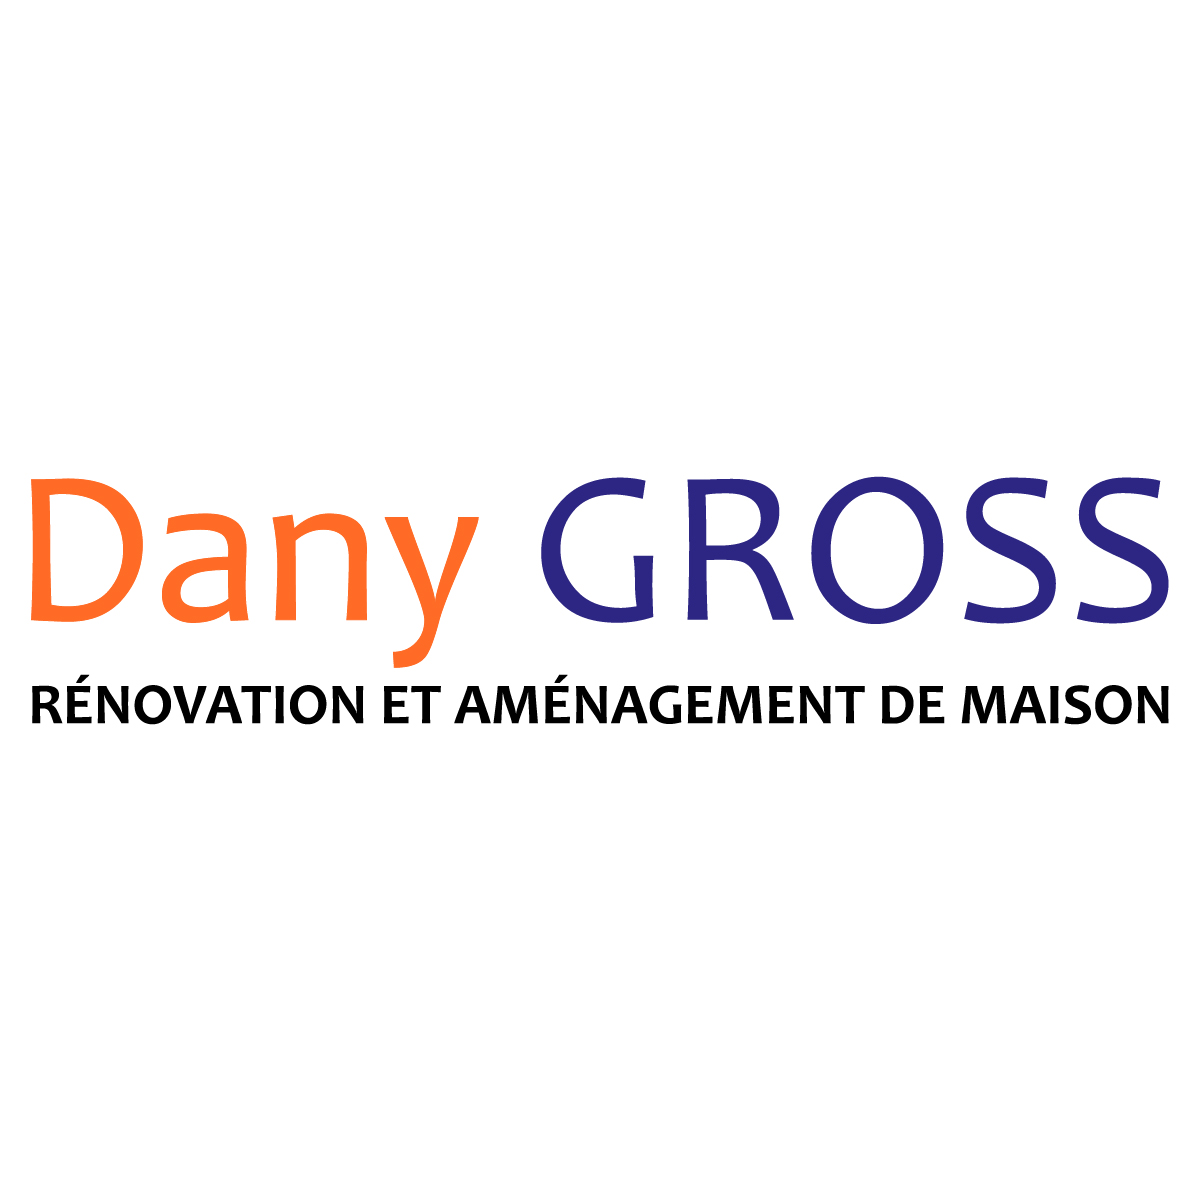 (c) Renovation-dany-gross.fr